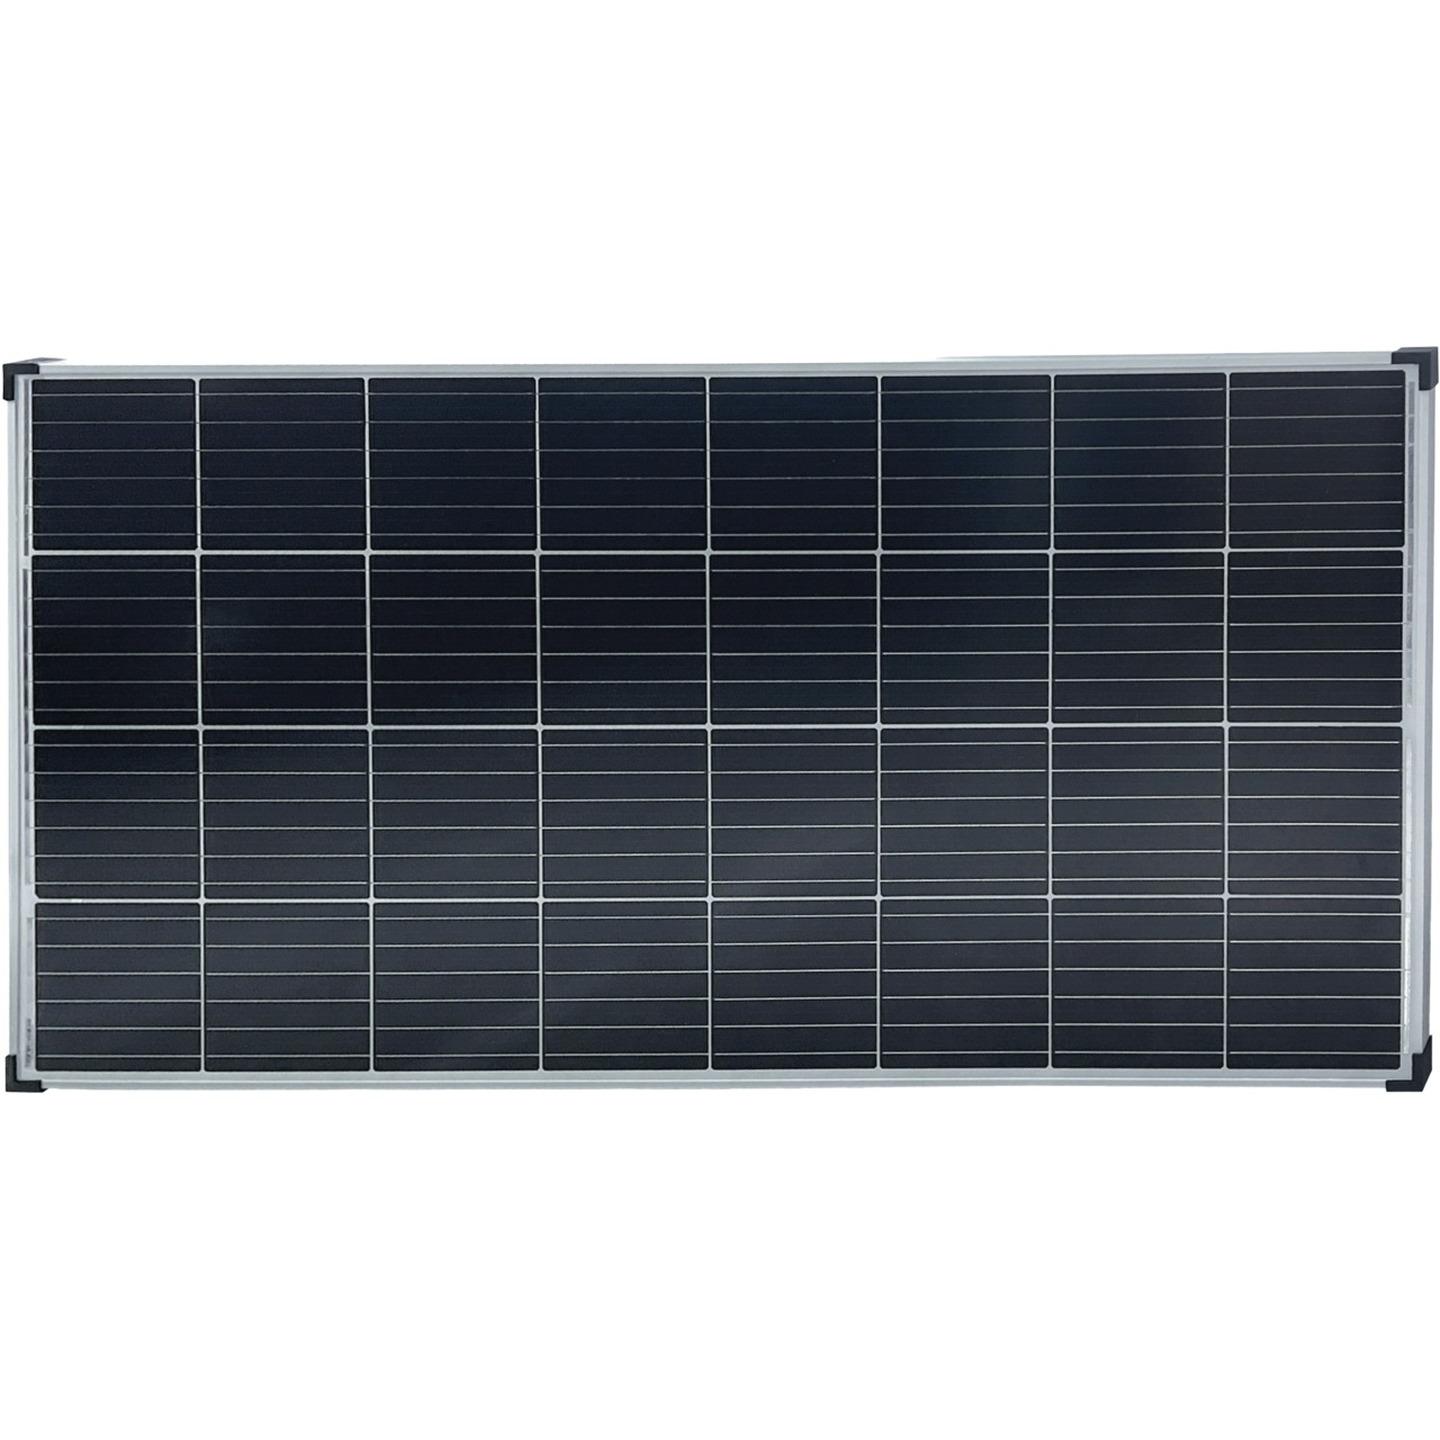 Rovin 12V 160W Monocrystalline Solar Panel